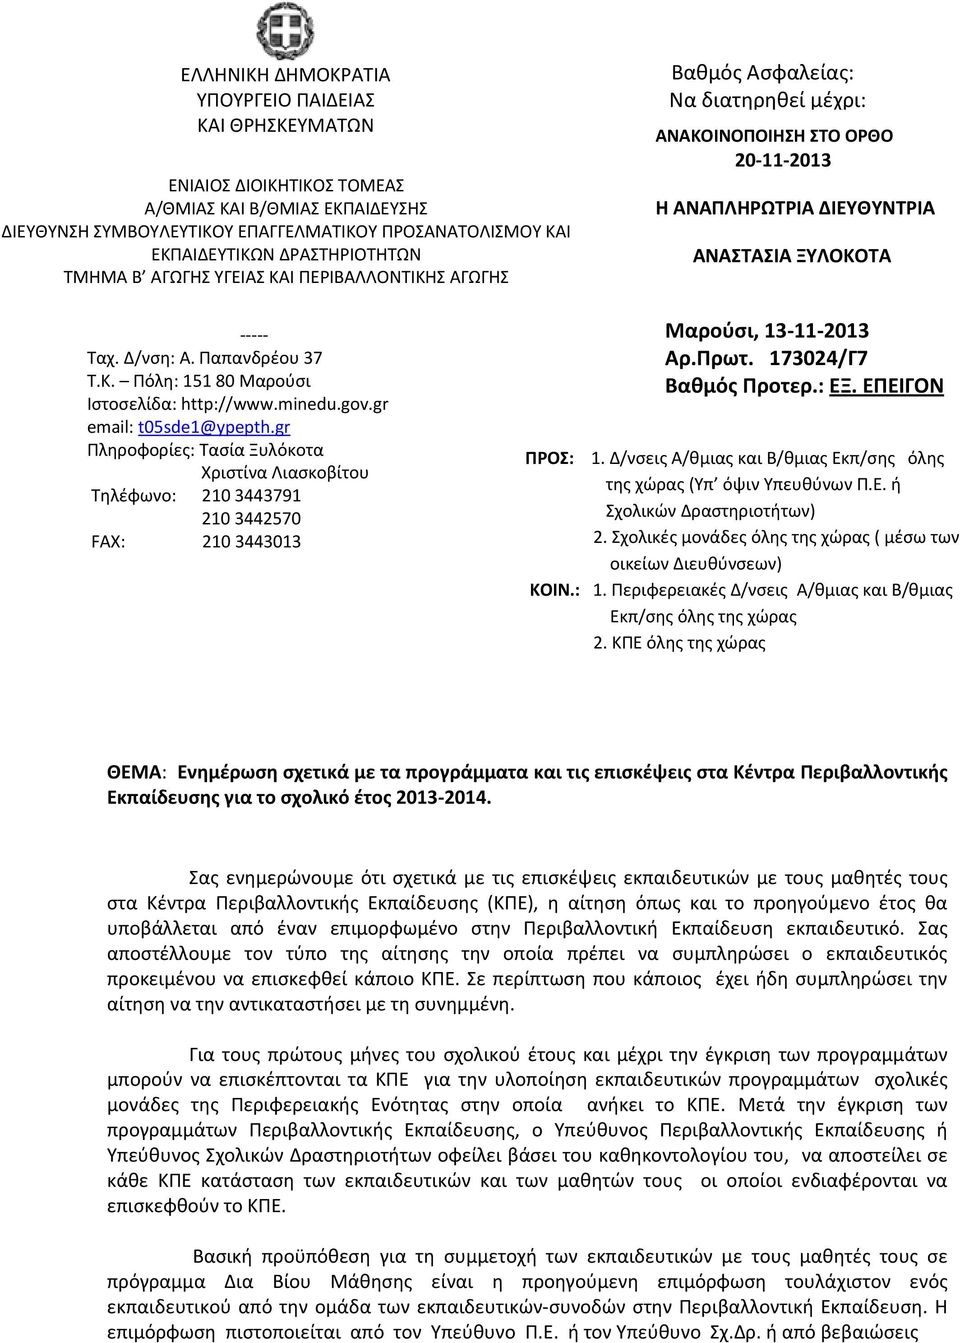 minedu.gov.gr email: t0sde@ypepth.gr Πληροφορίες: Τασία Ξυλόκοτα ριστίνα Λιασκοβίτου Τηλέφωνο: 0 9 0 0 FAX: 0 0 Μαρούσι, 0 Πρωτ. 0/Γ Βαθμός Προτερ.: ΕΞ. ΕΠΕΙΓΟΝ ΠΡΟ:.